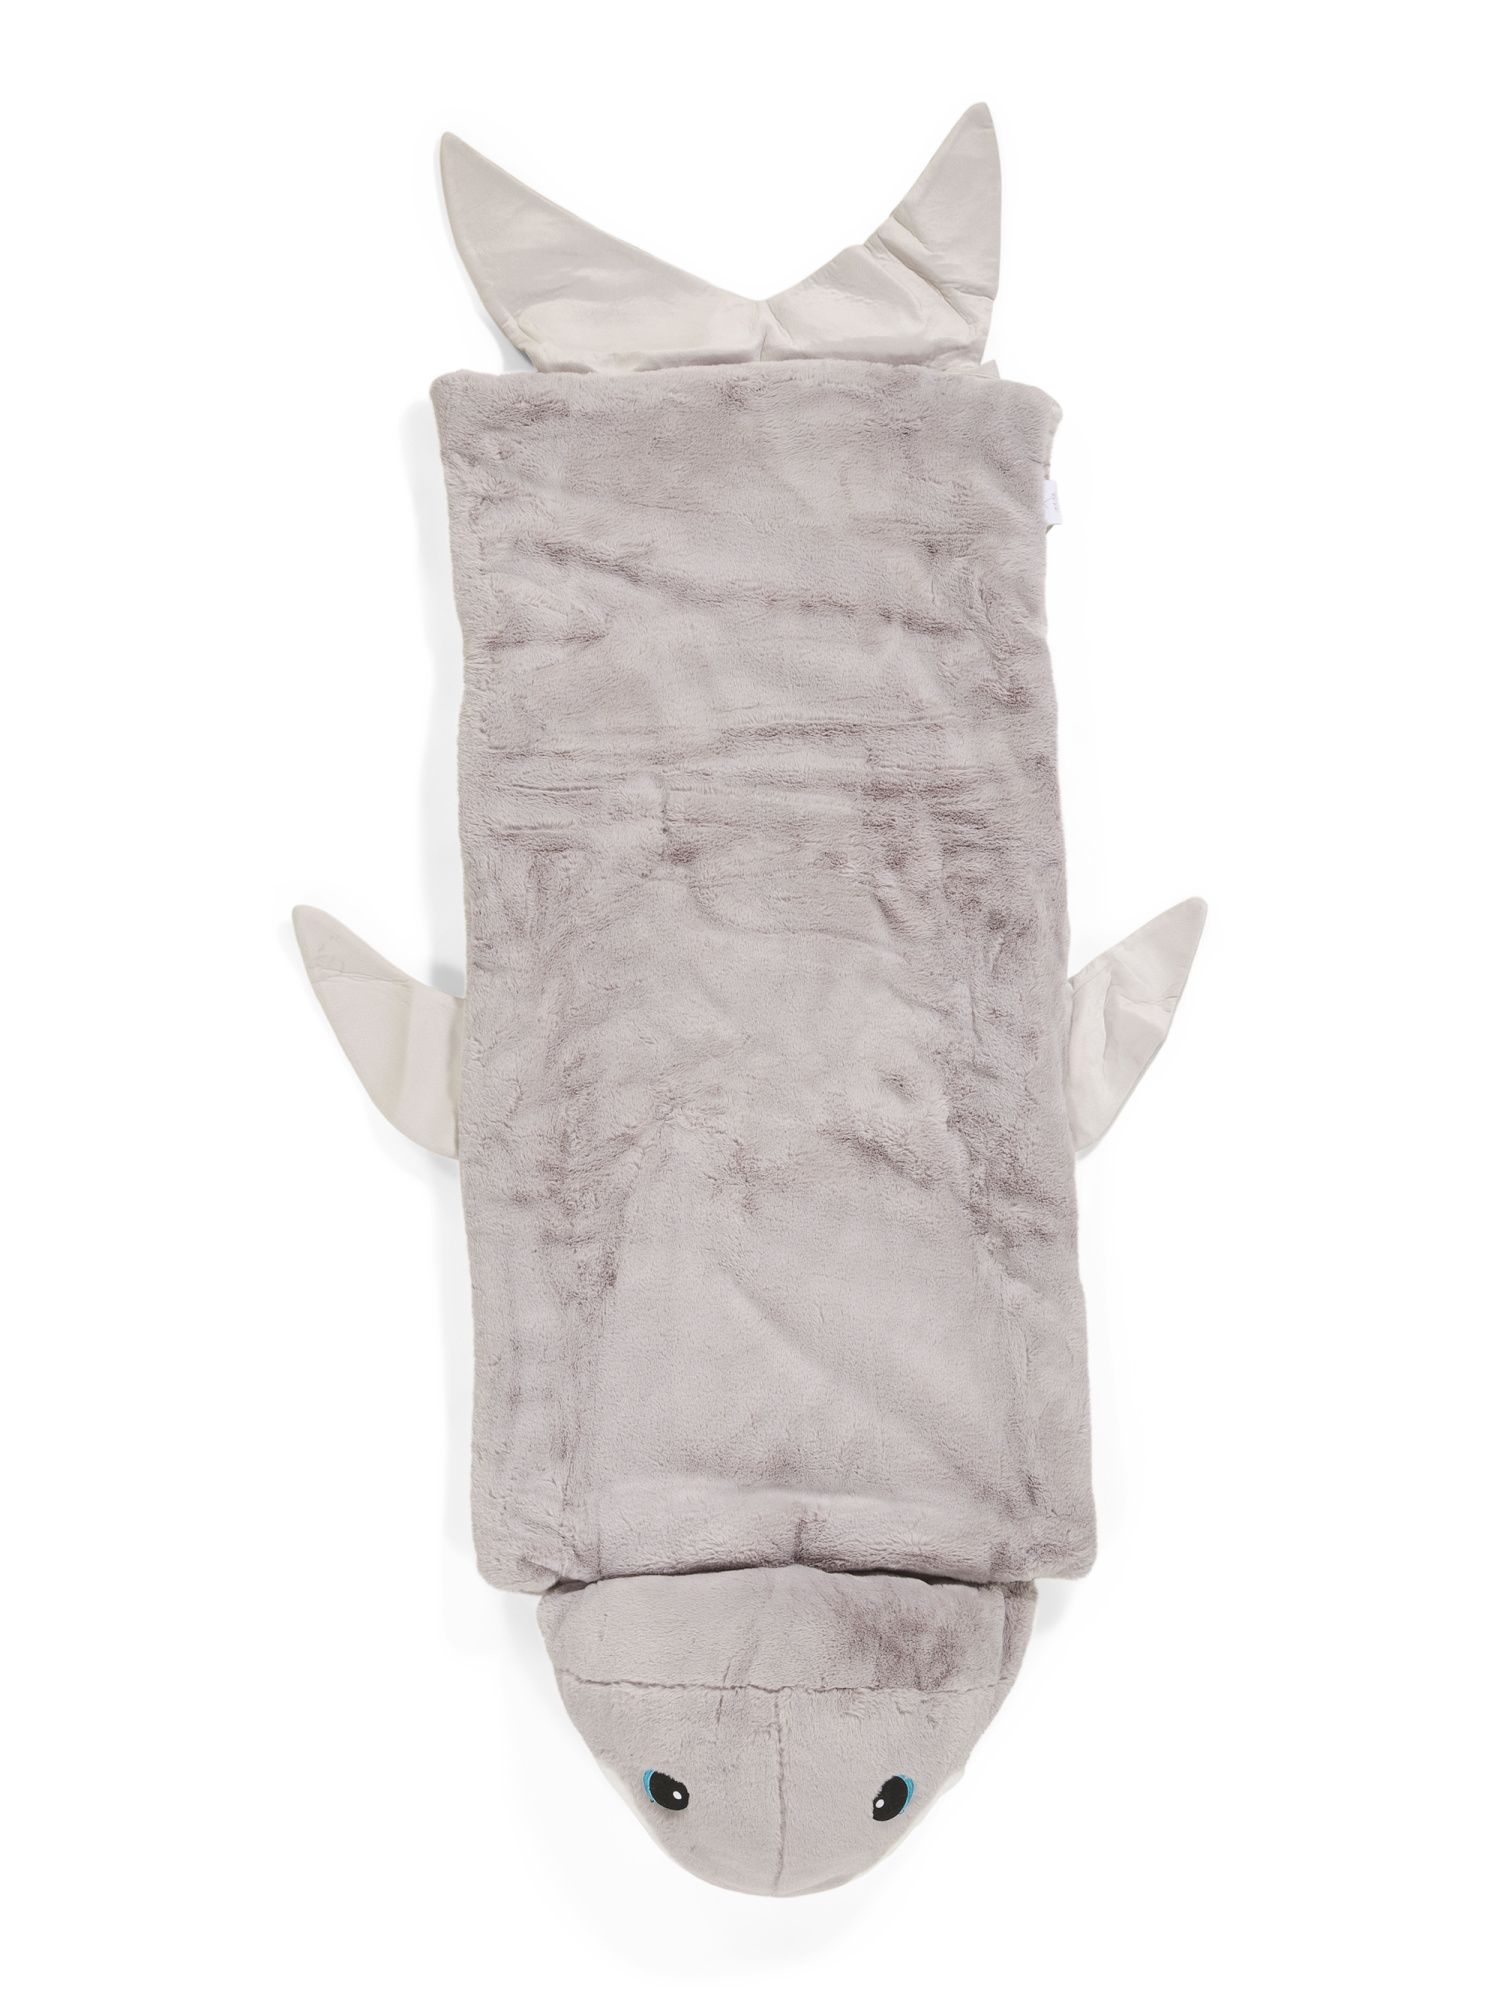 Shark Plush Sleeping Bag | Gifts For Kids | Marshalls | Marshalls